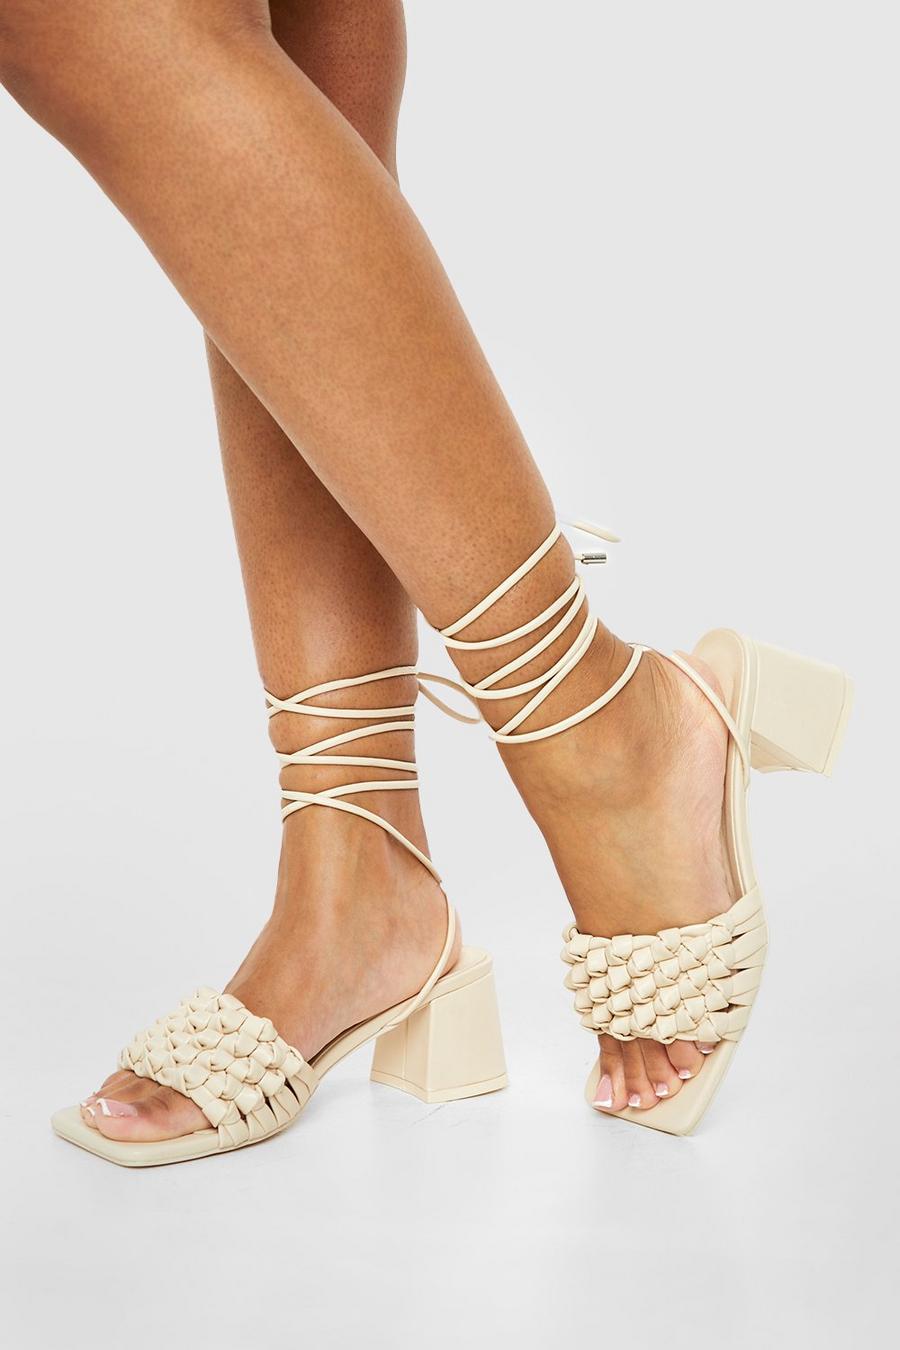 Cream Wide Width Low Block Woven Tie Up Sandals